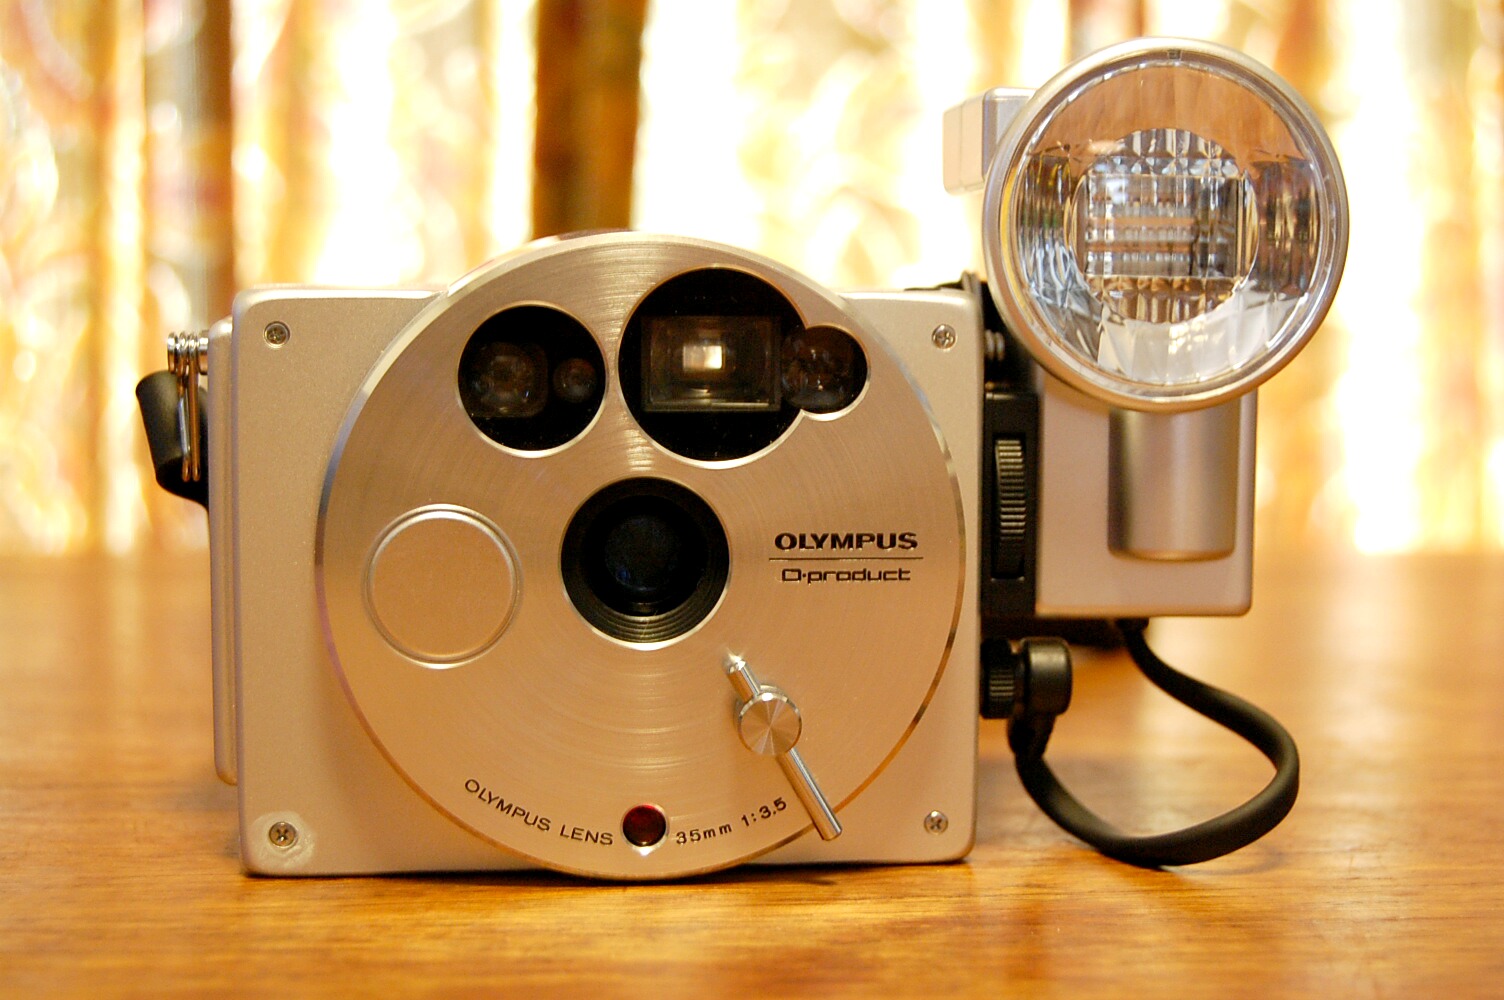 OLYMPUS フィルムカメラ O-product | hartwellspremium.com